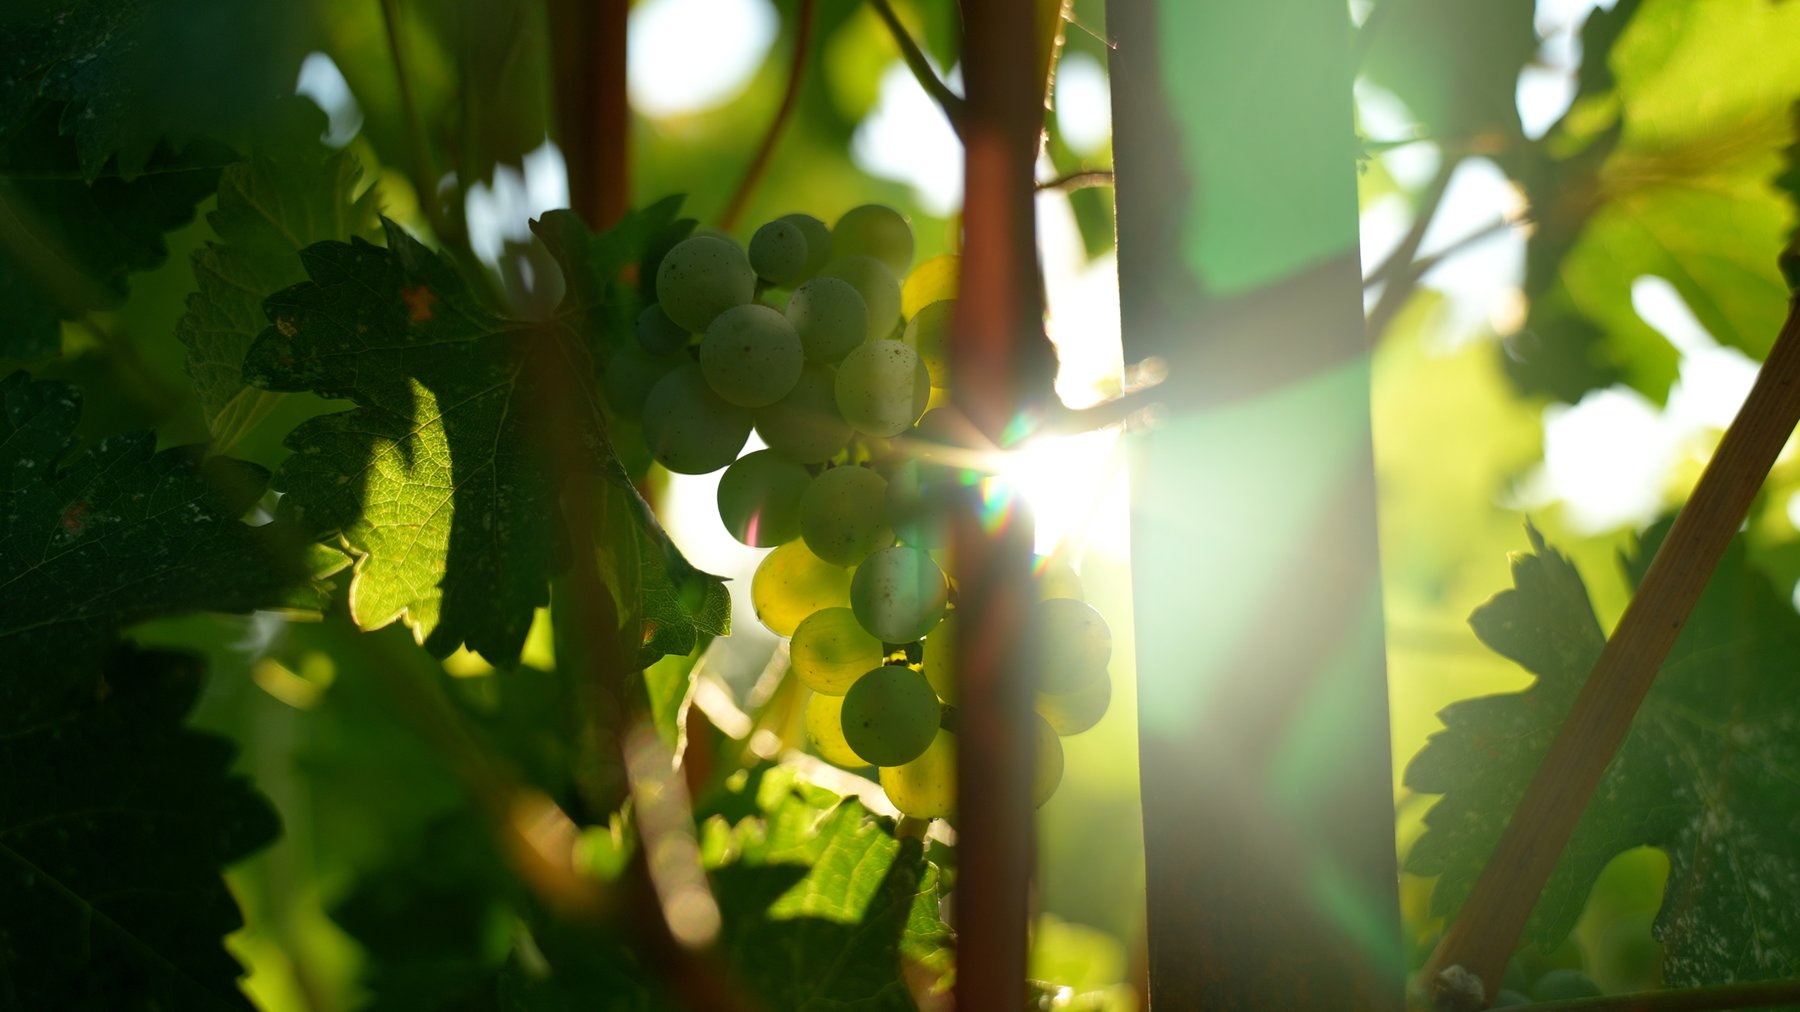 Grapes in Vineyard